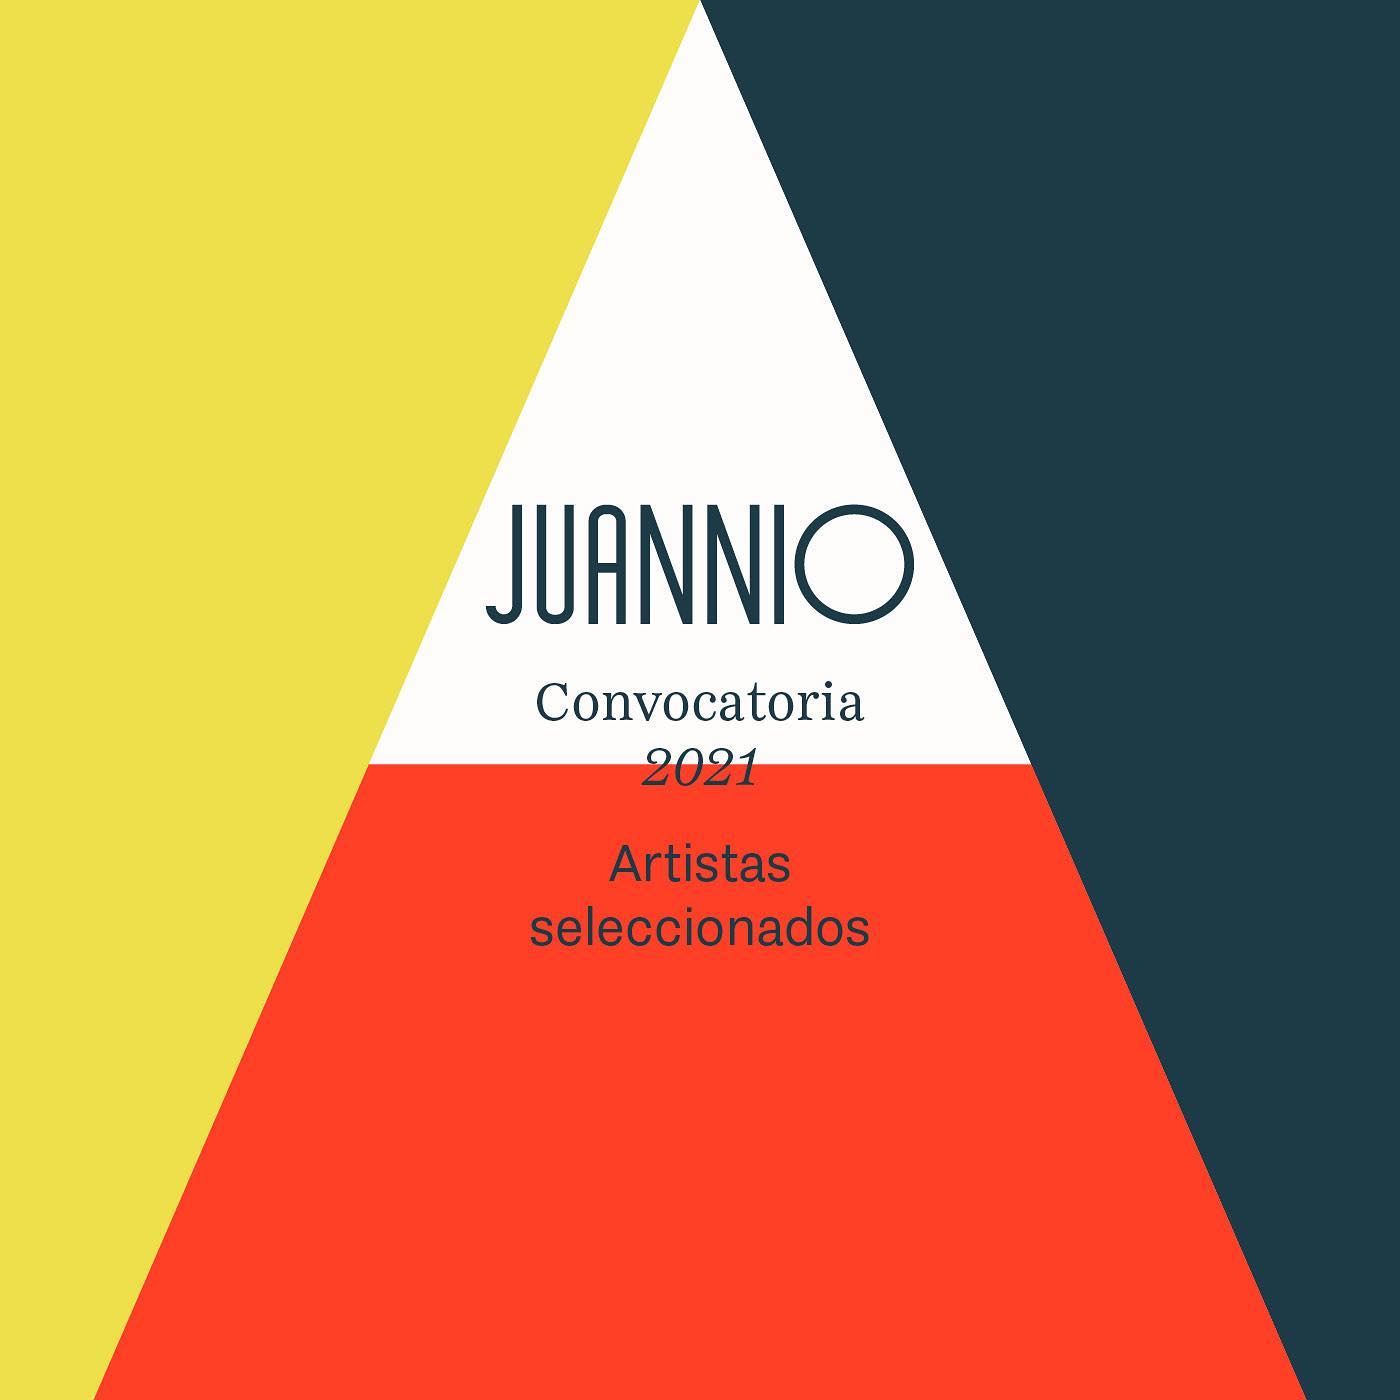 La subasta y exposición "Juannio" se llevará a cabo en el Museo Nacional de Arte Moderno "Carlos Mérida". (Foto Prensa Libre: Facebook Juannio.guatemala).